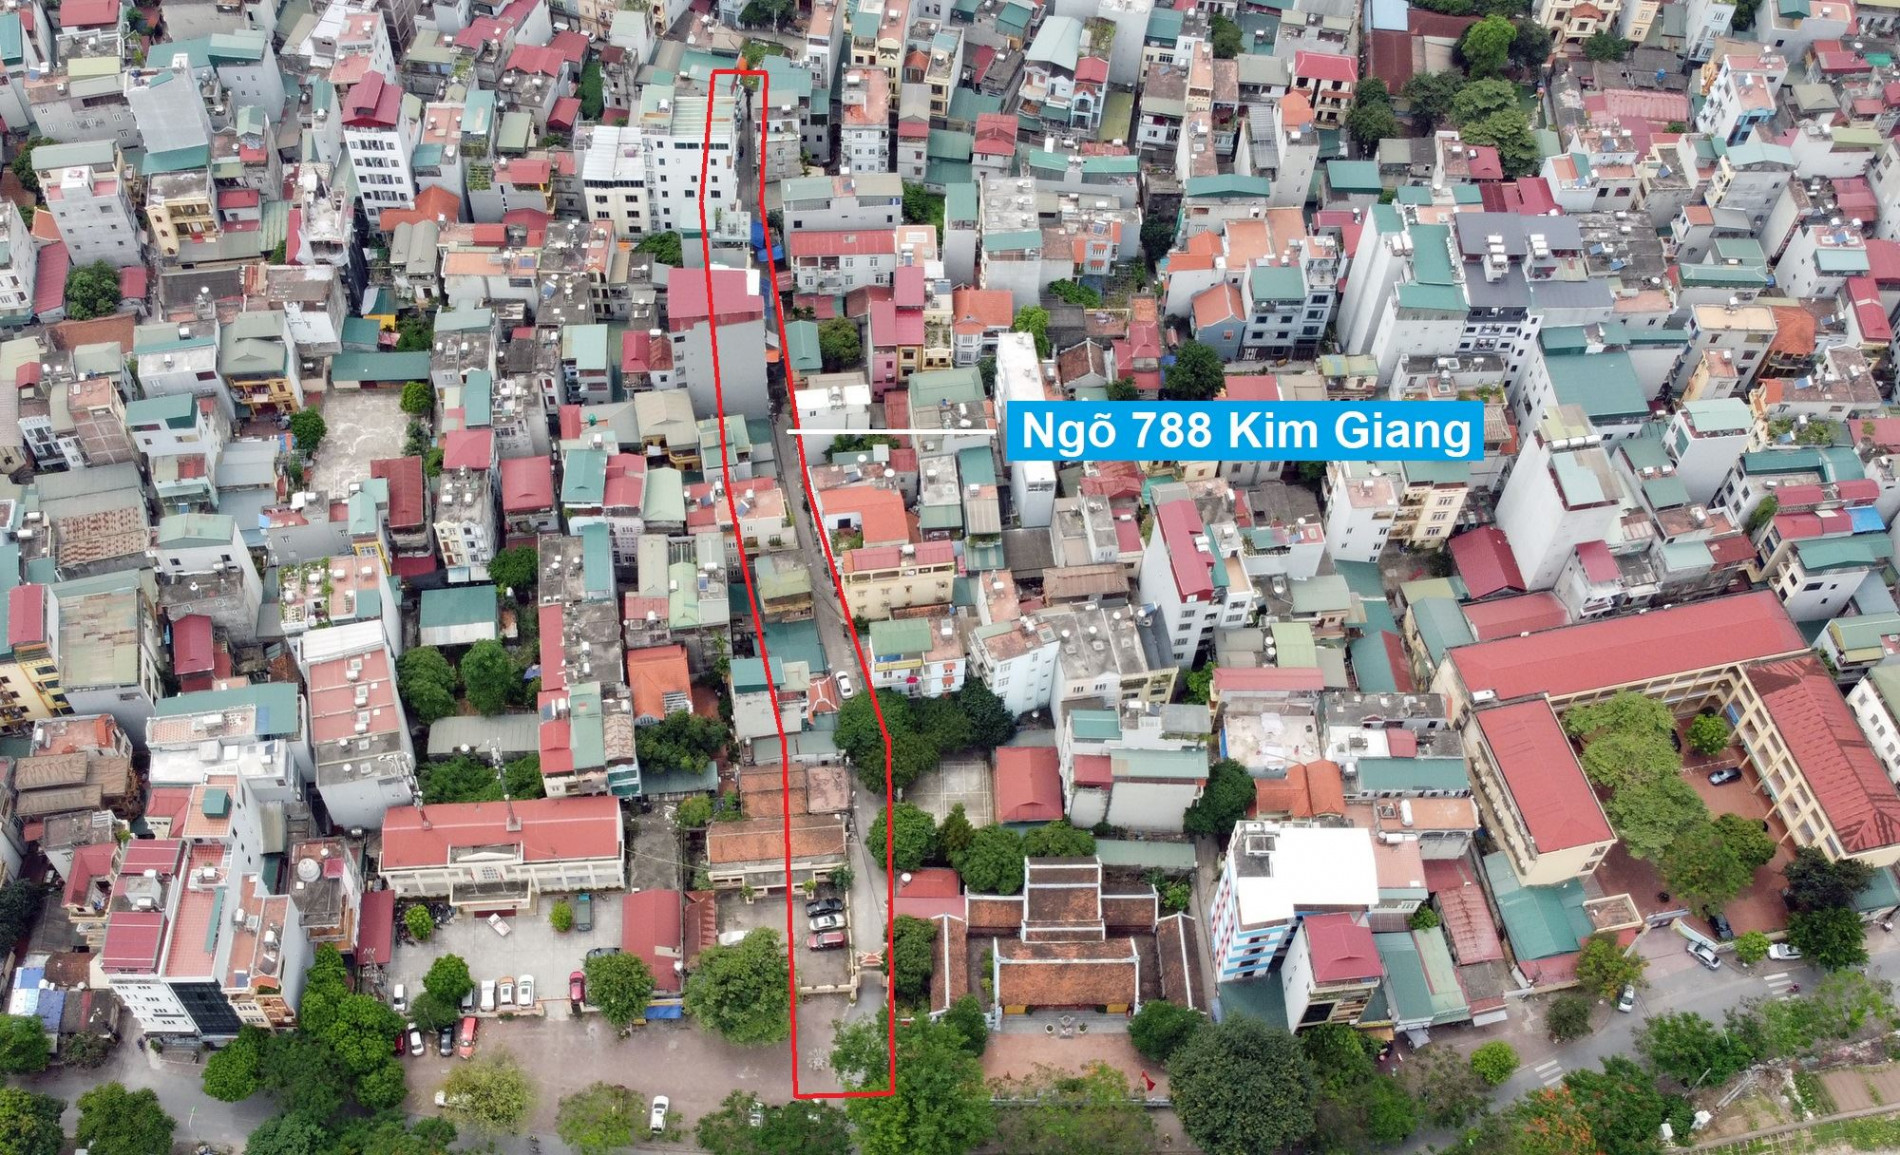 Những khu đất sắp thu hồi để mở đường ở xã Thanh Liệt, Thanh Trì, Hà Nội (phần 8)